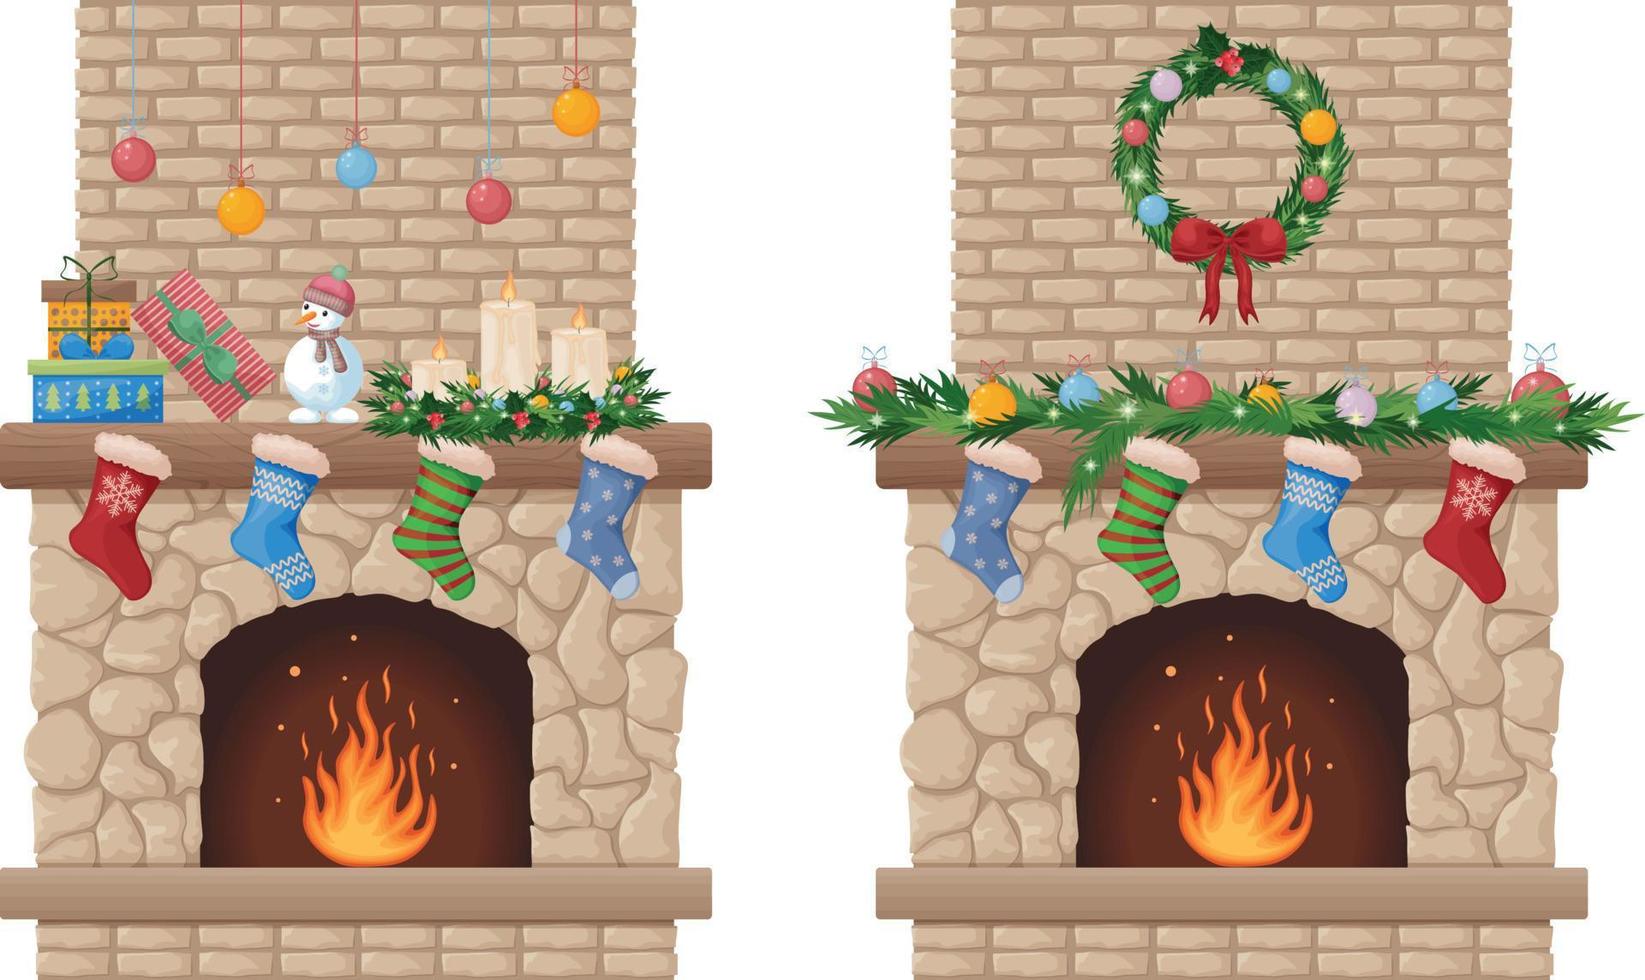 öppen spis. jul öppen spis med en jul krans och strumpor för gåvor. öppen spis med brand och festlig dekorationer. vektor illustration